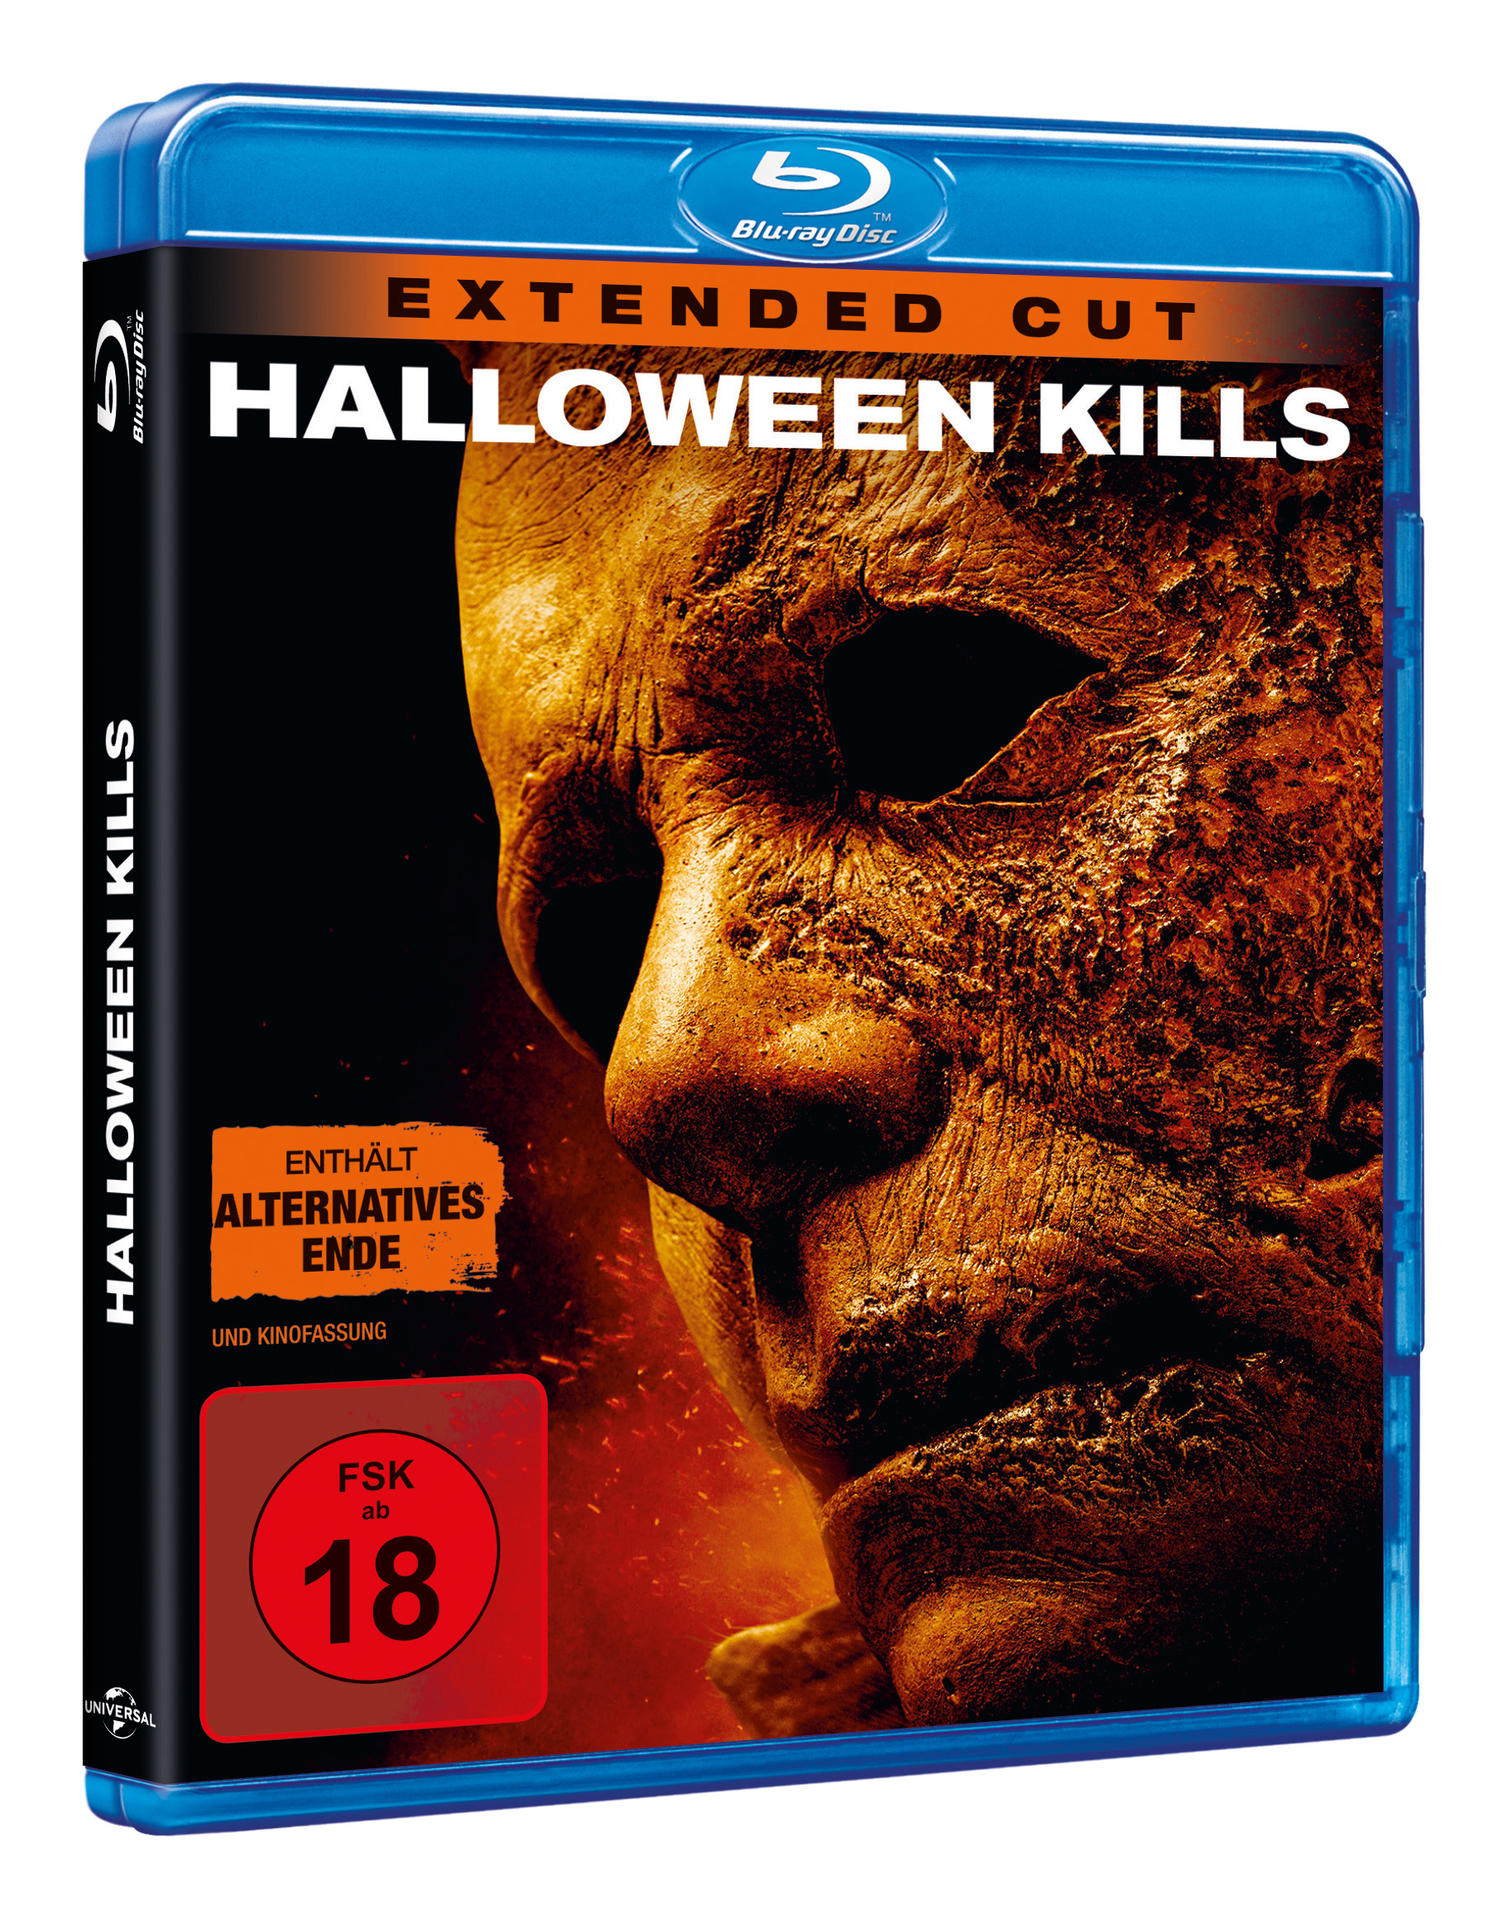 Kills Halloween Blu-ray